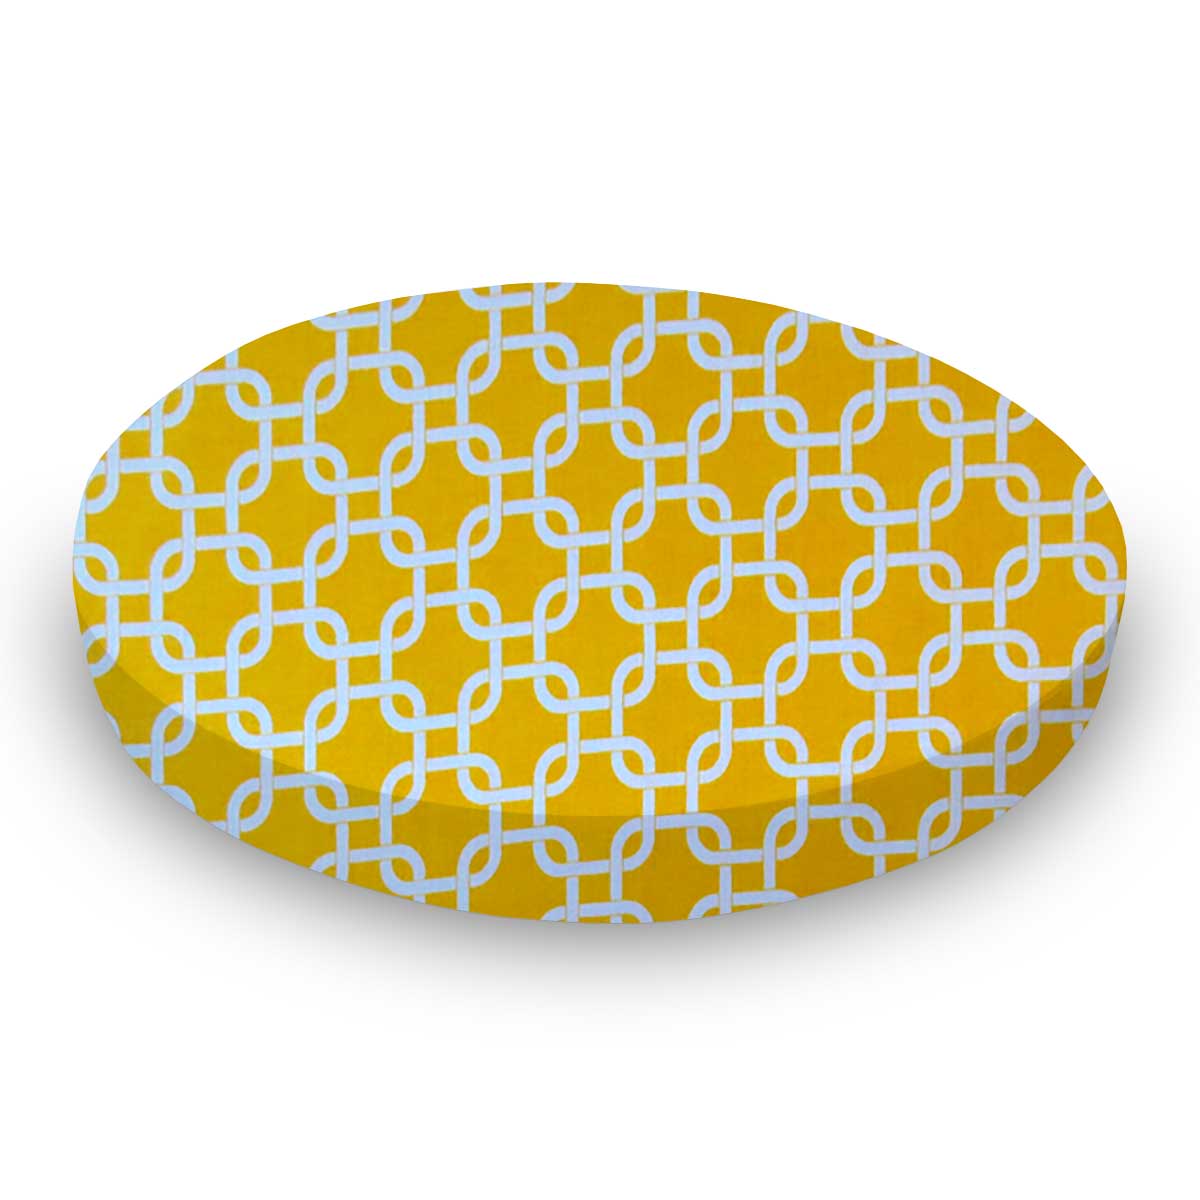 Oval Crib (Stokke Sleepi) - Lemon Yellow Links - Fitted  Oval